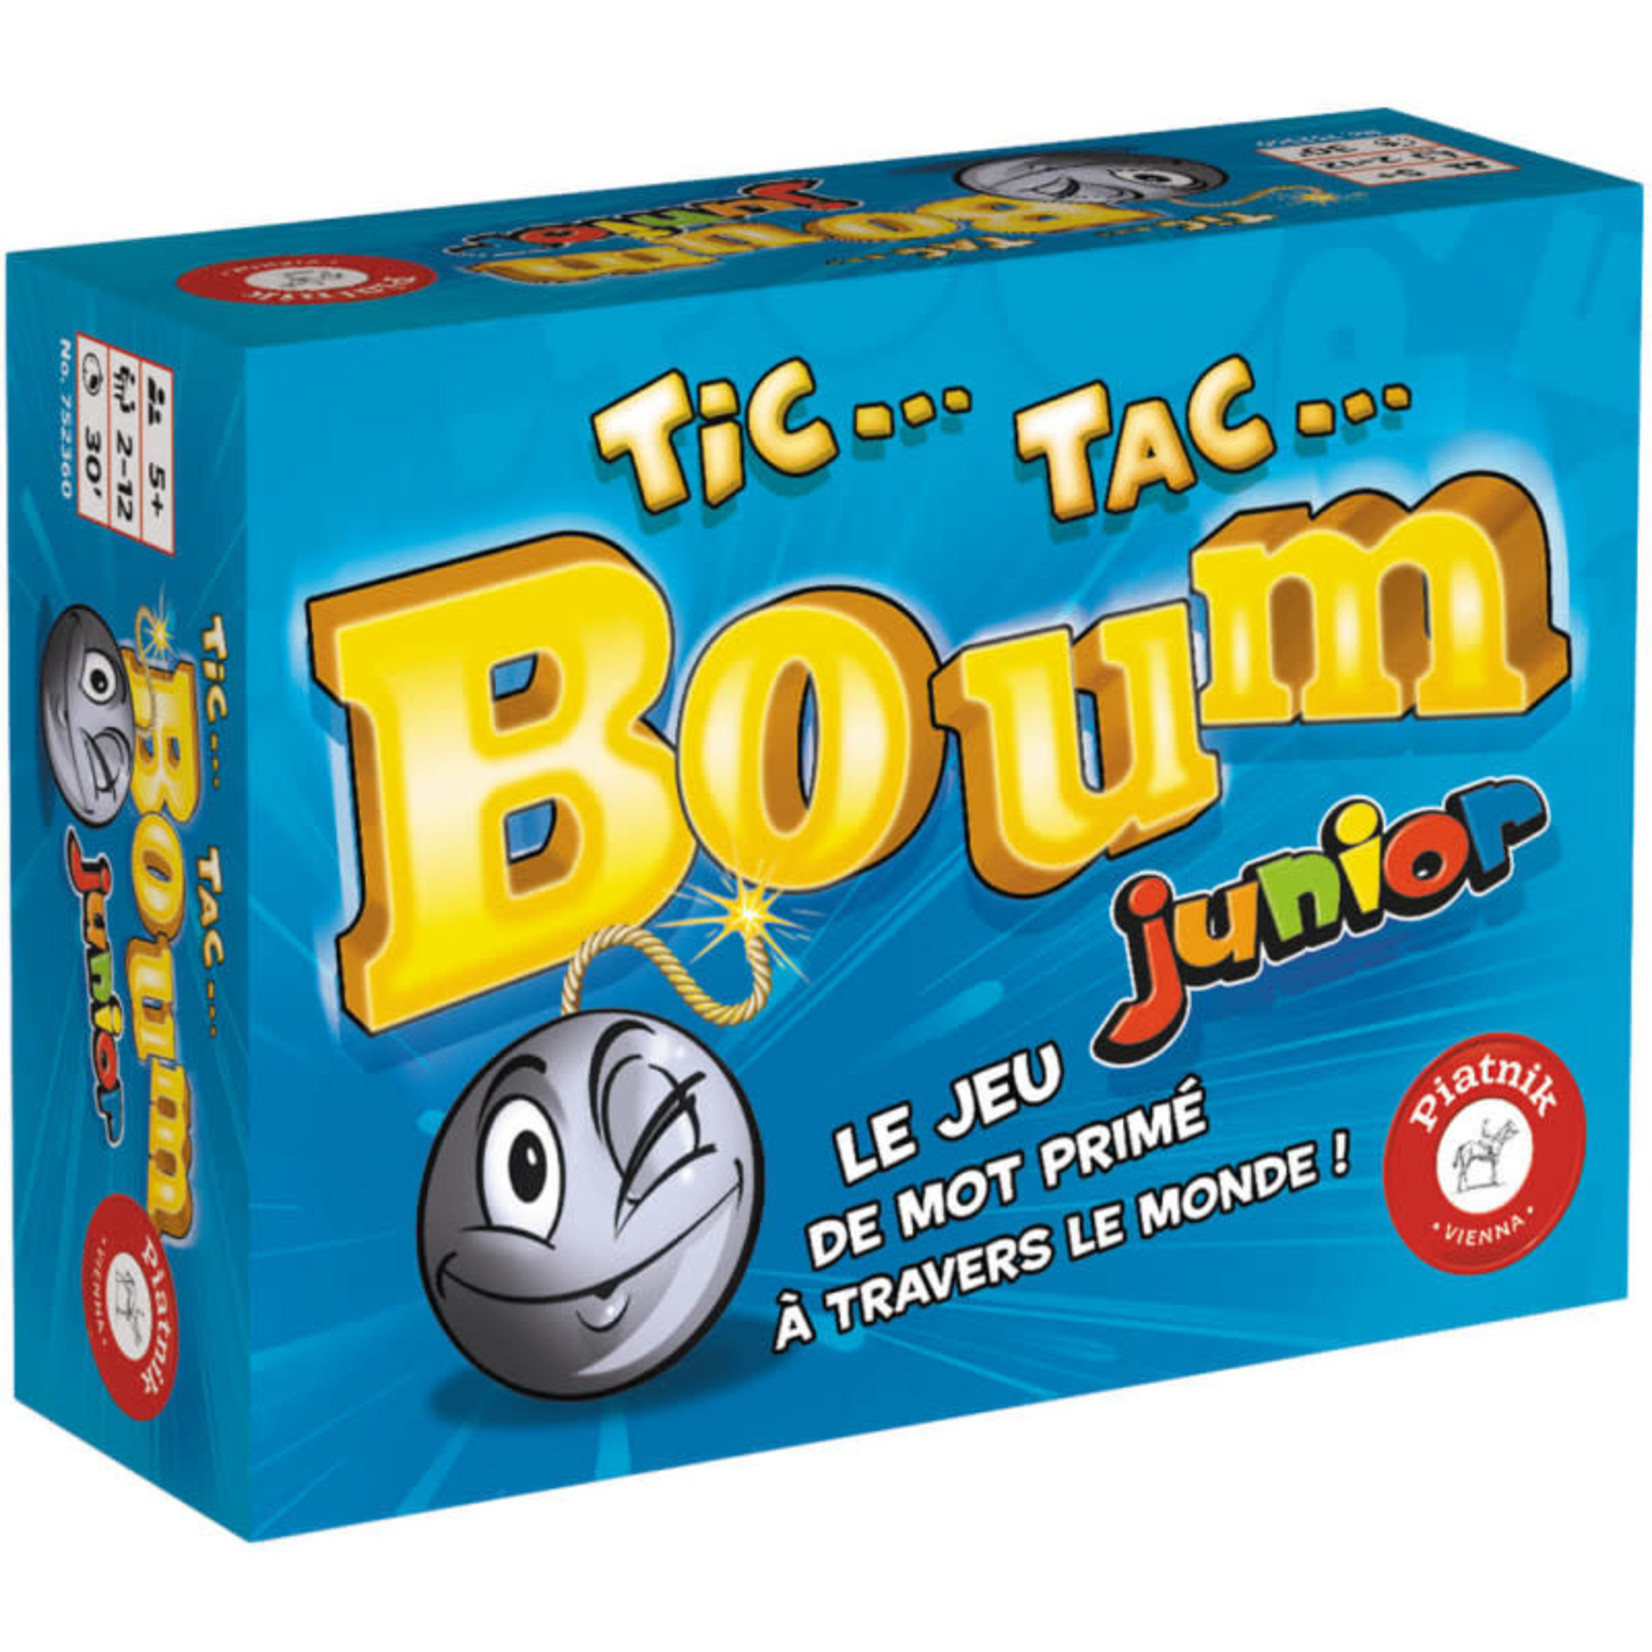 Tic Tac Boum: Junior (2007) - Jeux de Cartes 